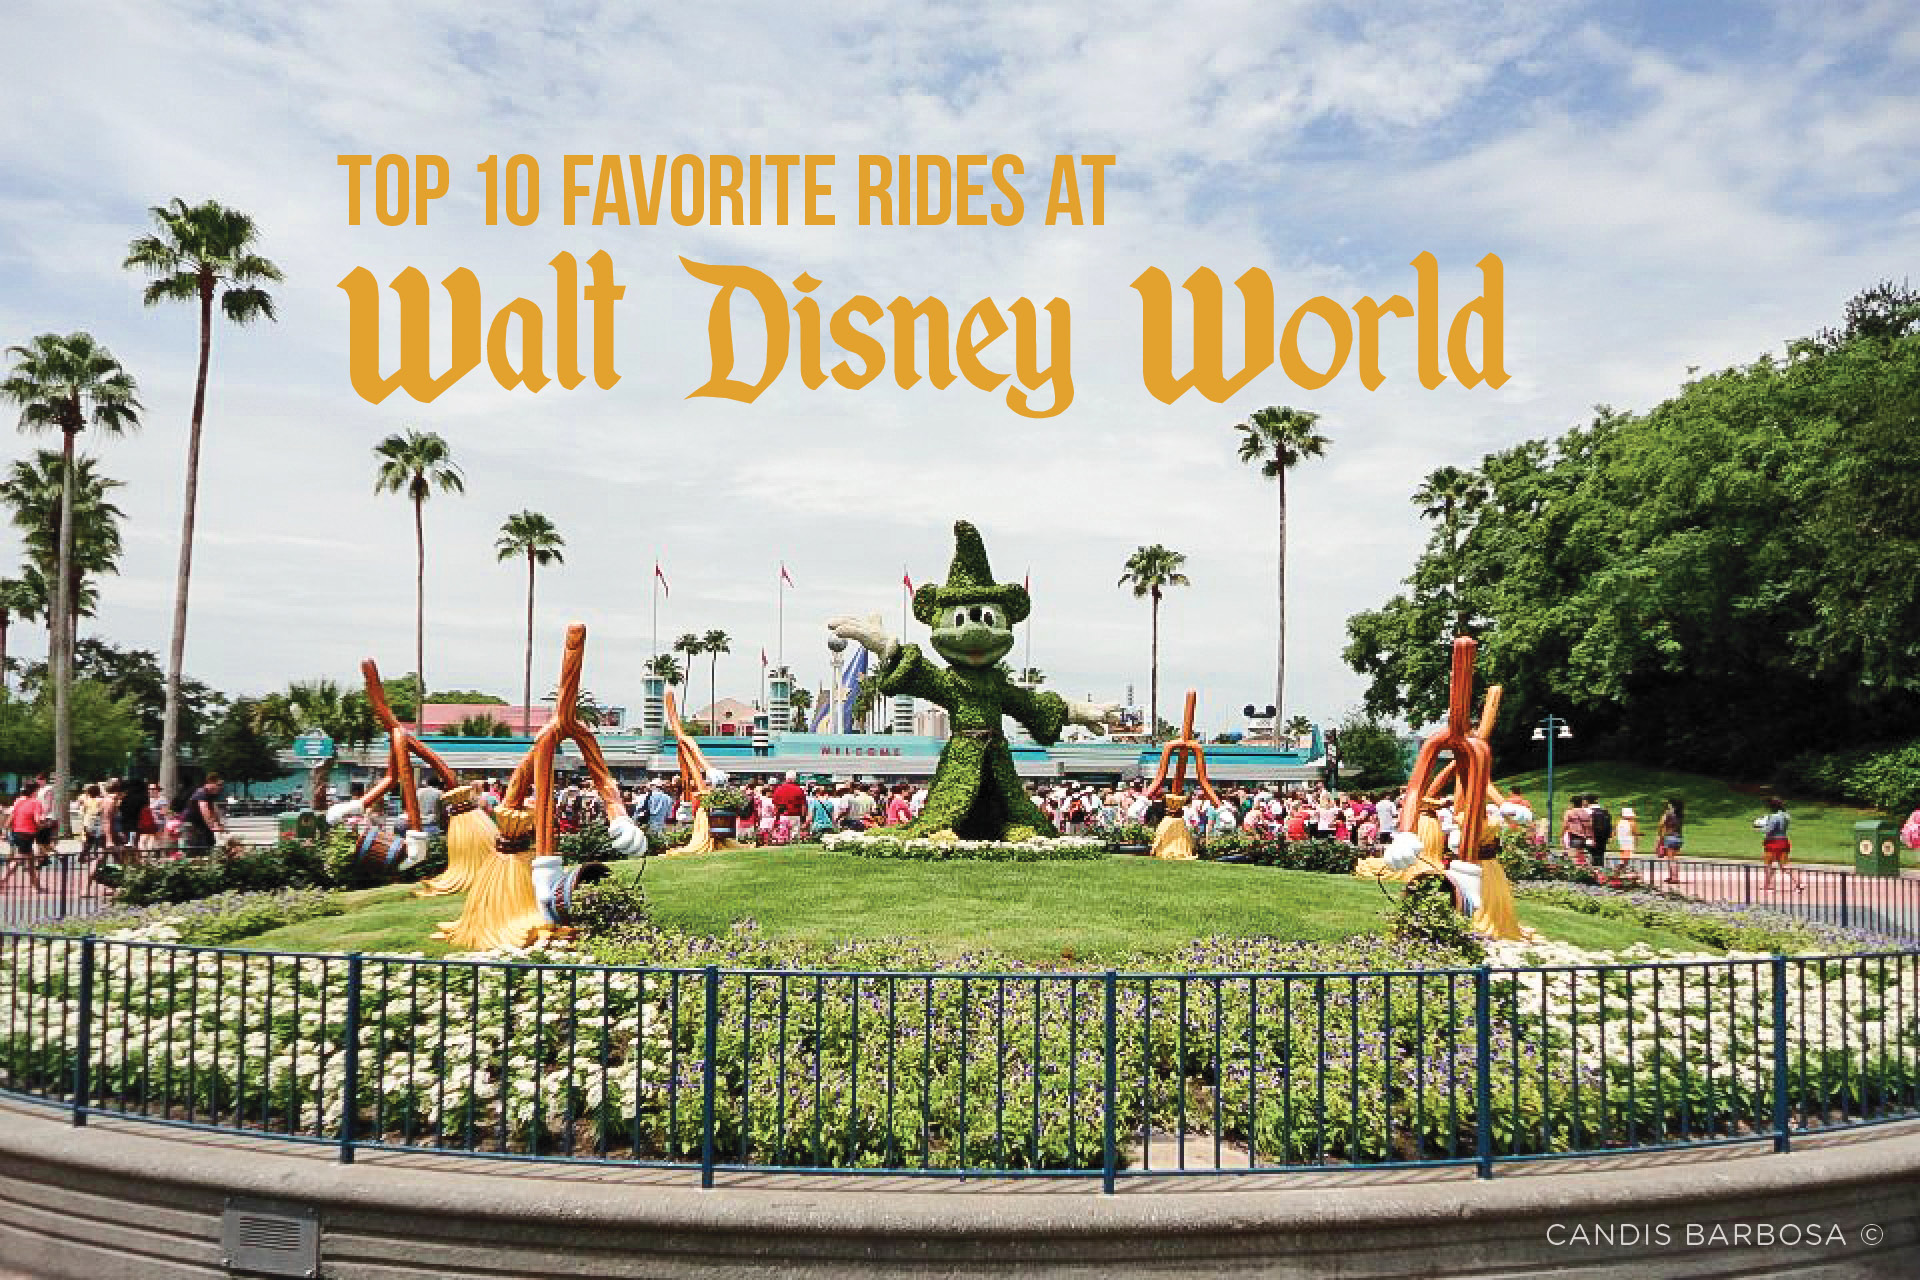 Top 10 Favorite Rides at Walt Disney World